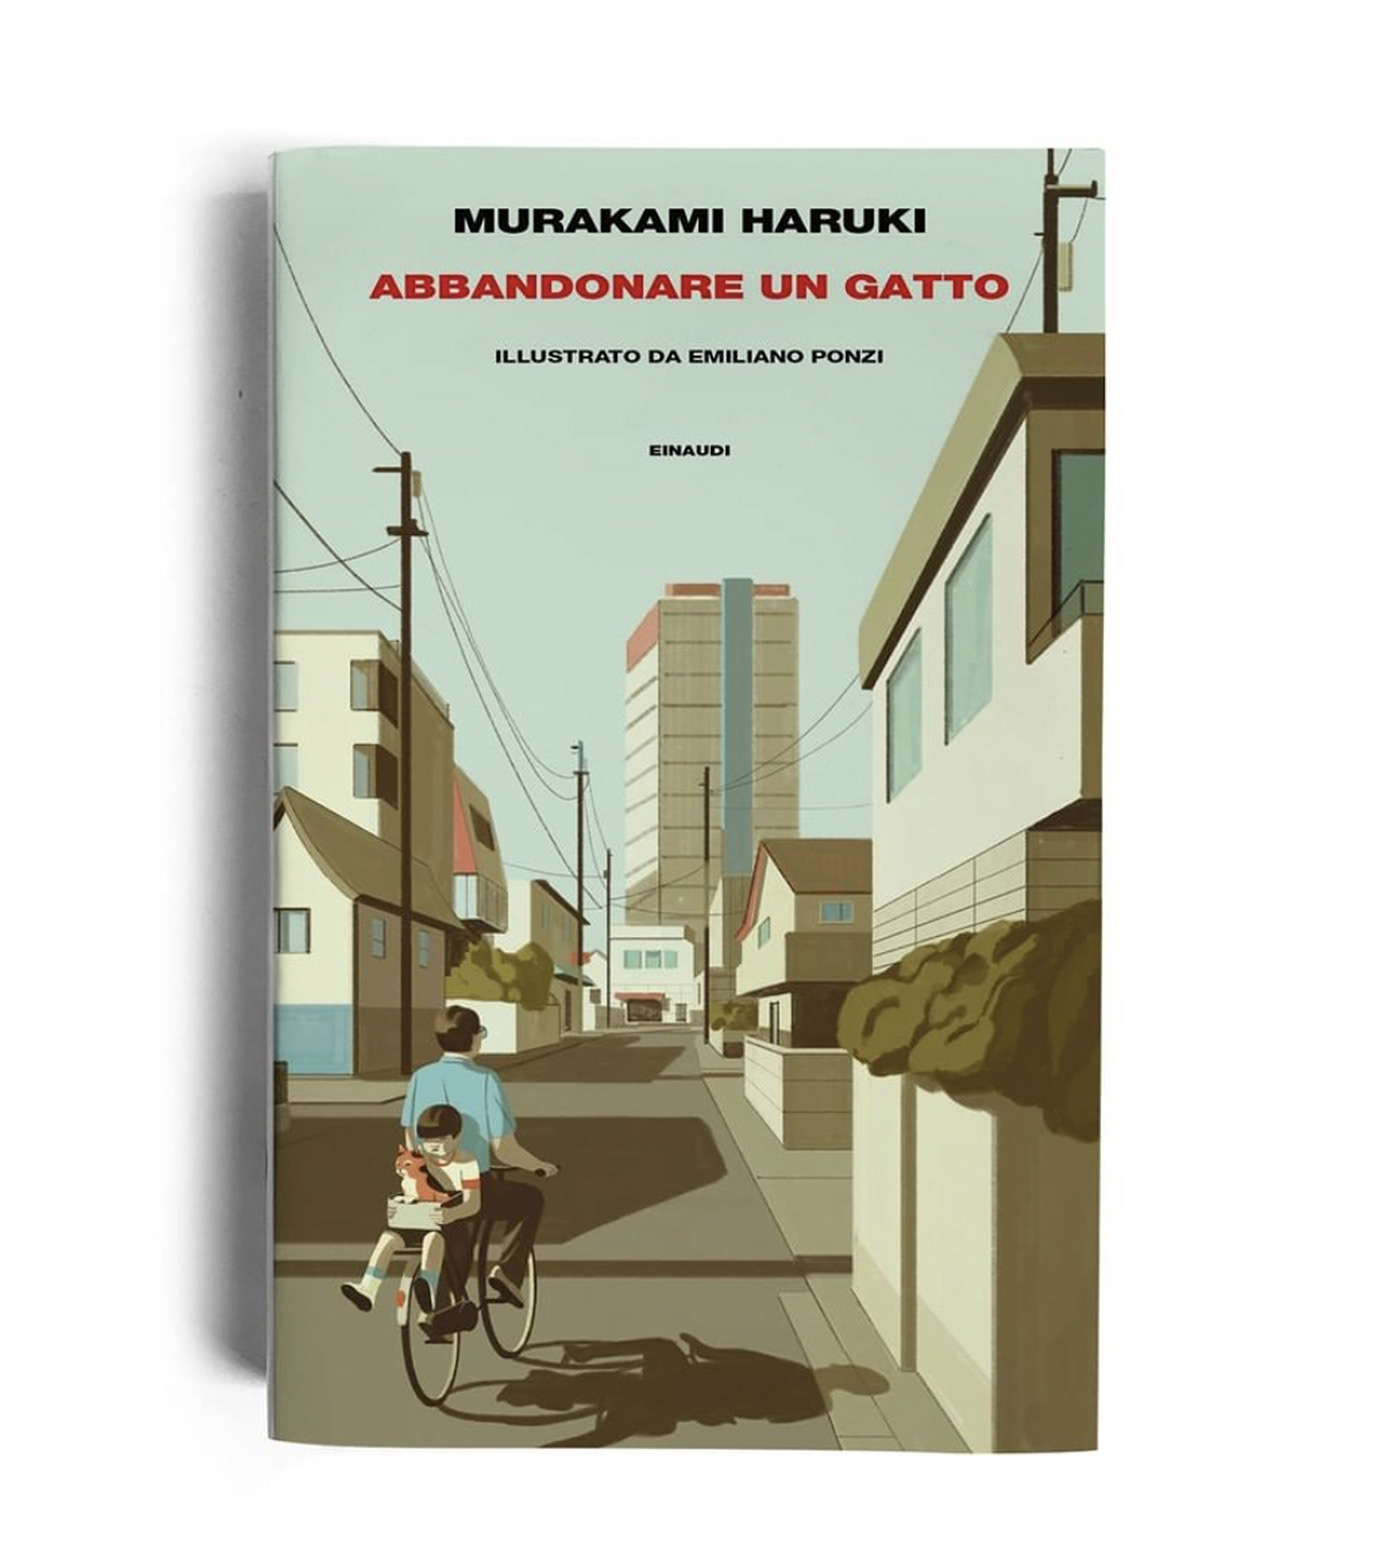 "Abbandonare un gatto" (abandoning a cat) by Haruki Murakami
